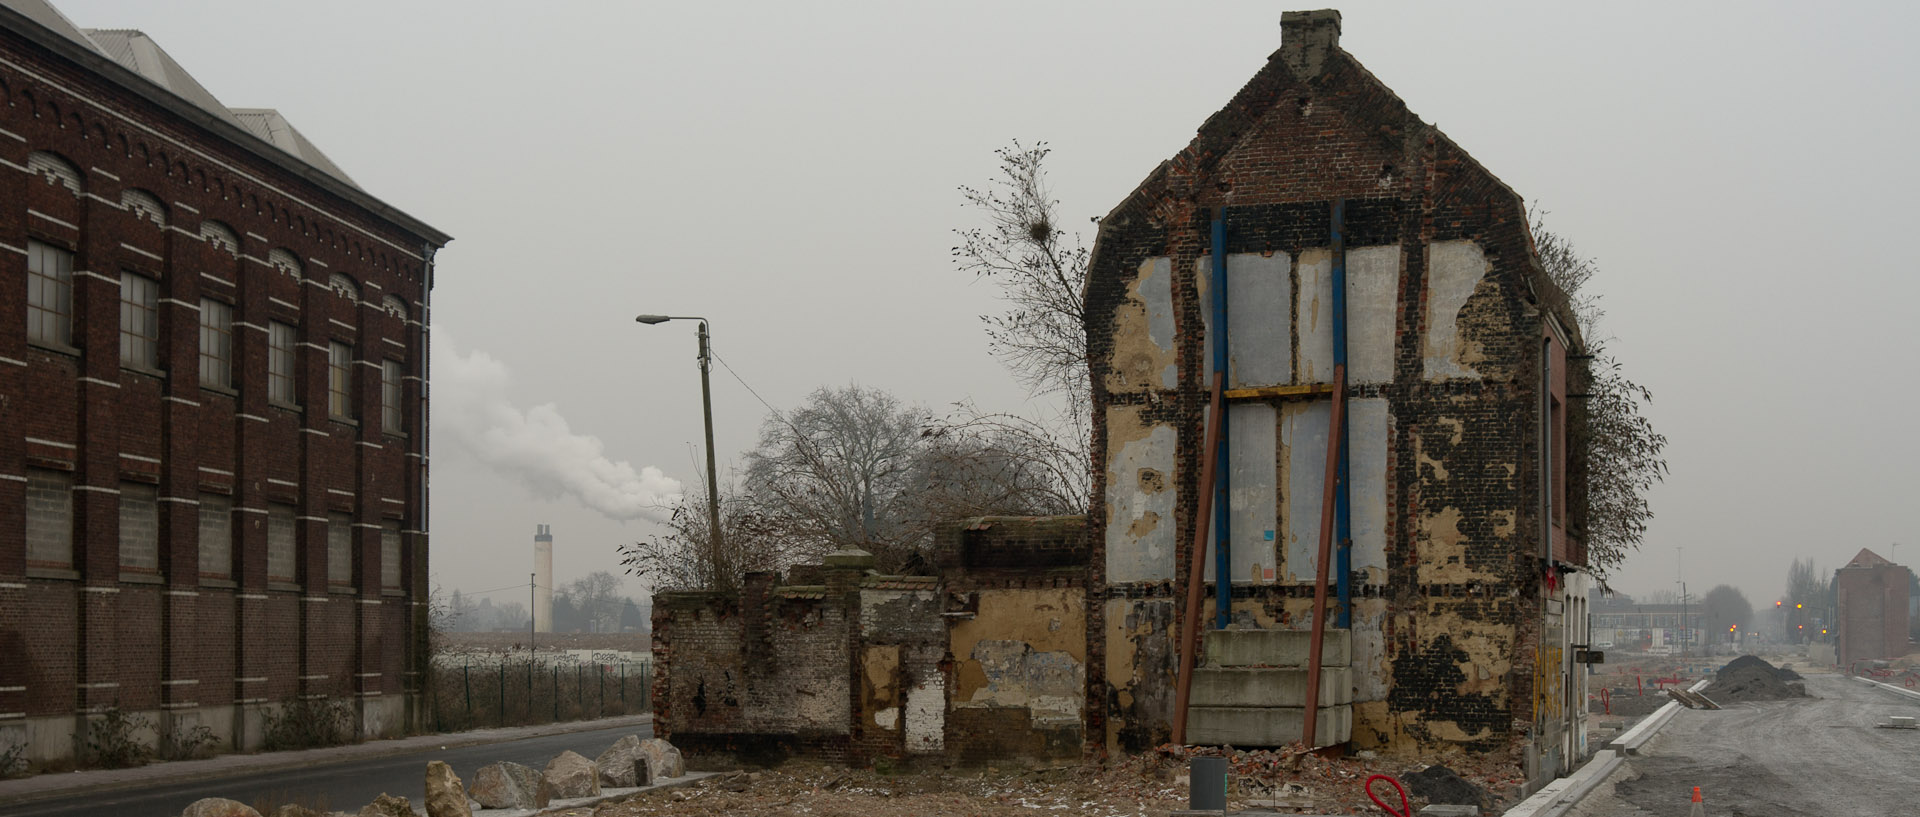 Maison en ruine dans la zone de l'Union, à Roubaix.